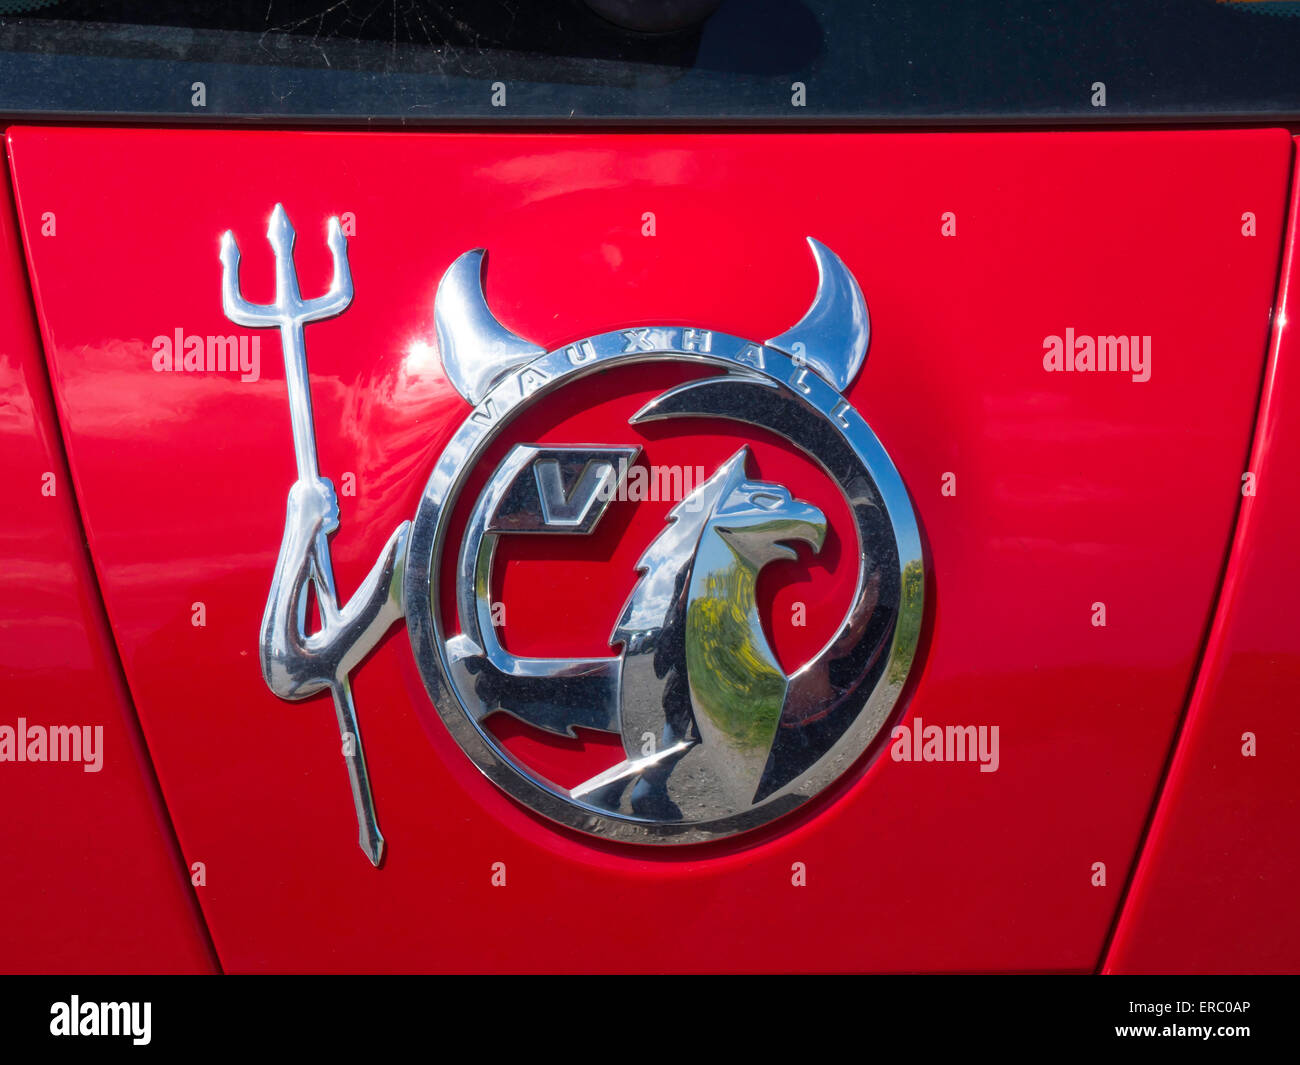 Opel Auto Logo Aufkleber Abzeichen individuell aussehen wie der Teufel  Stockfotografie - Alamy